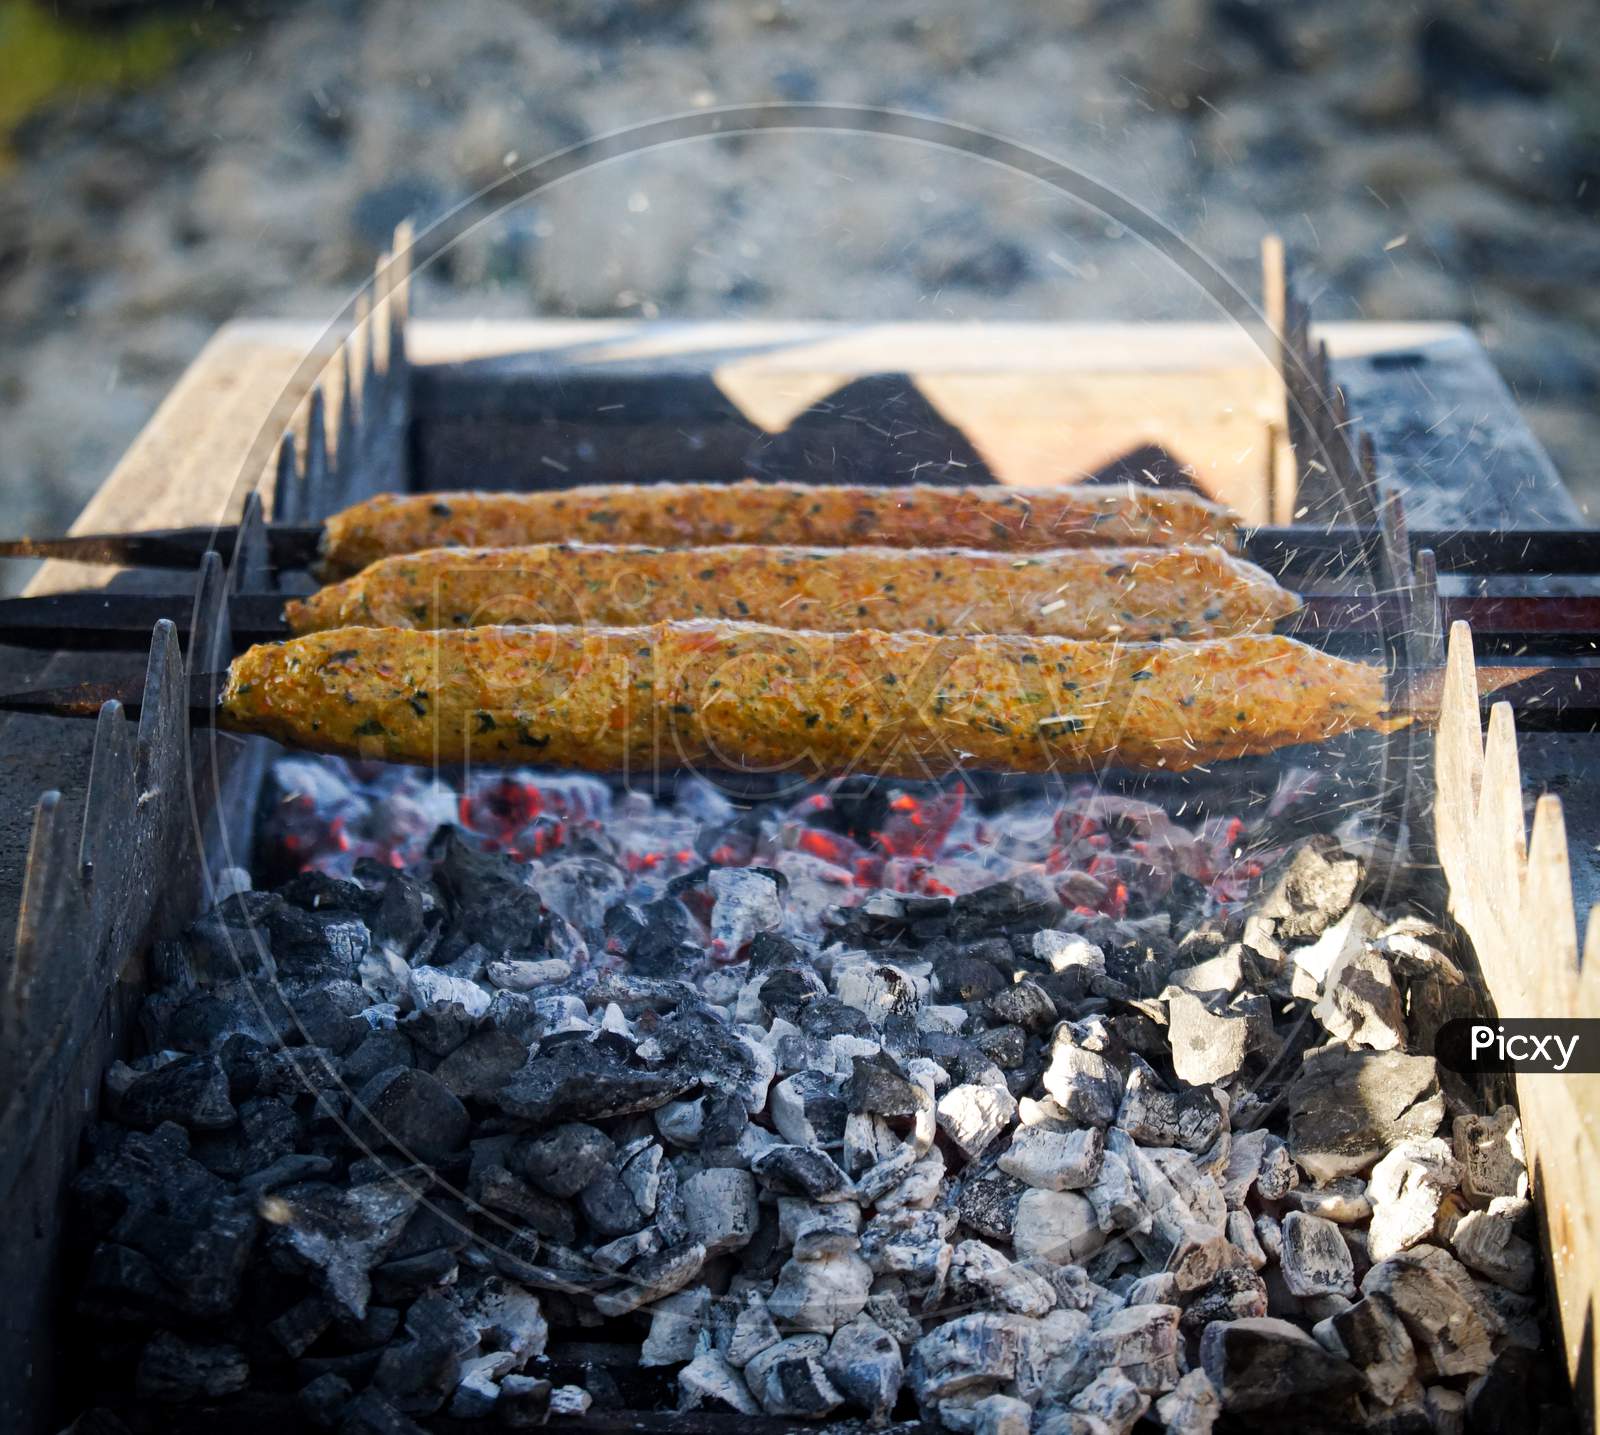 Seekh kebab on grill, top view